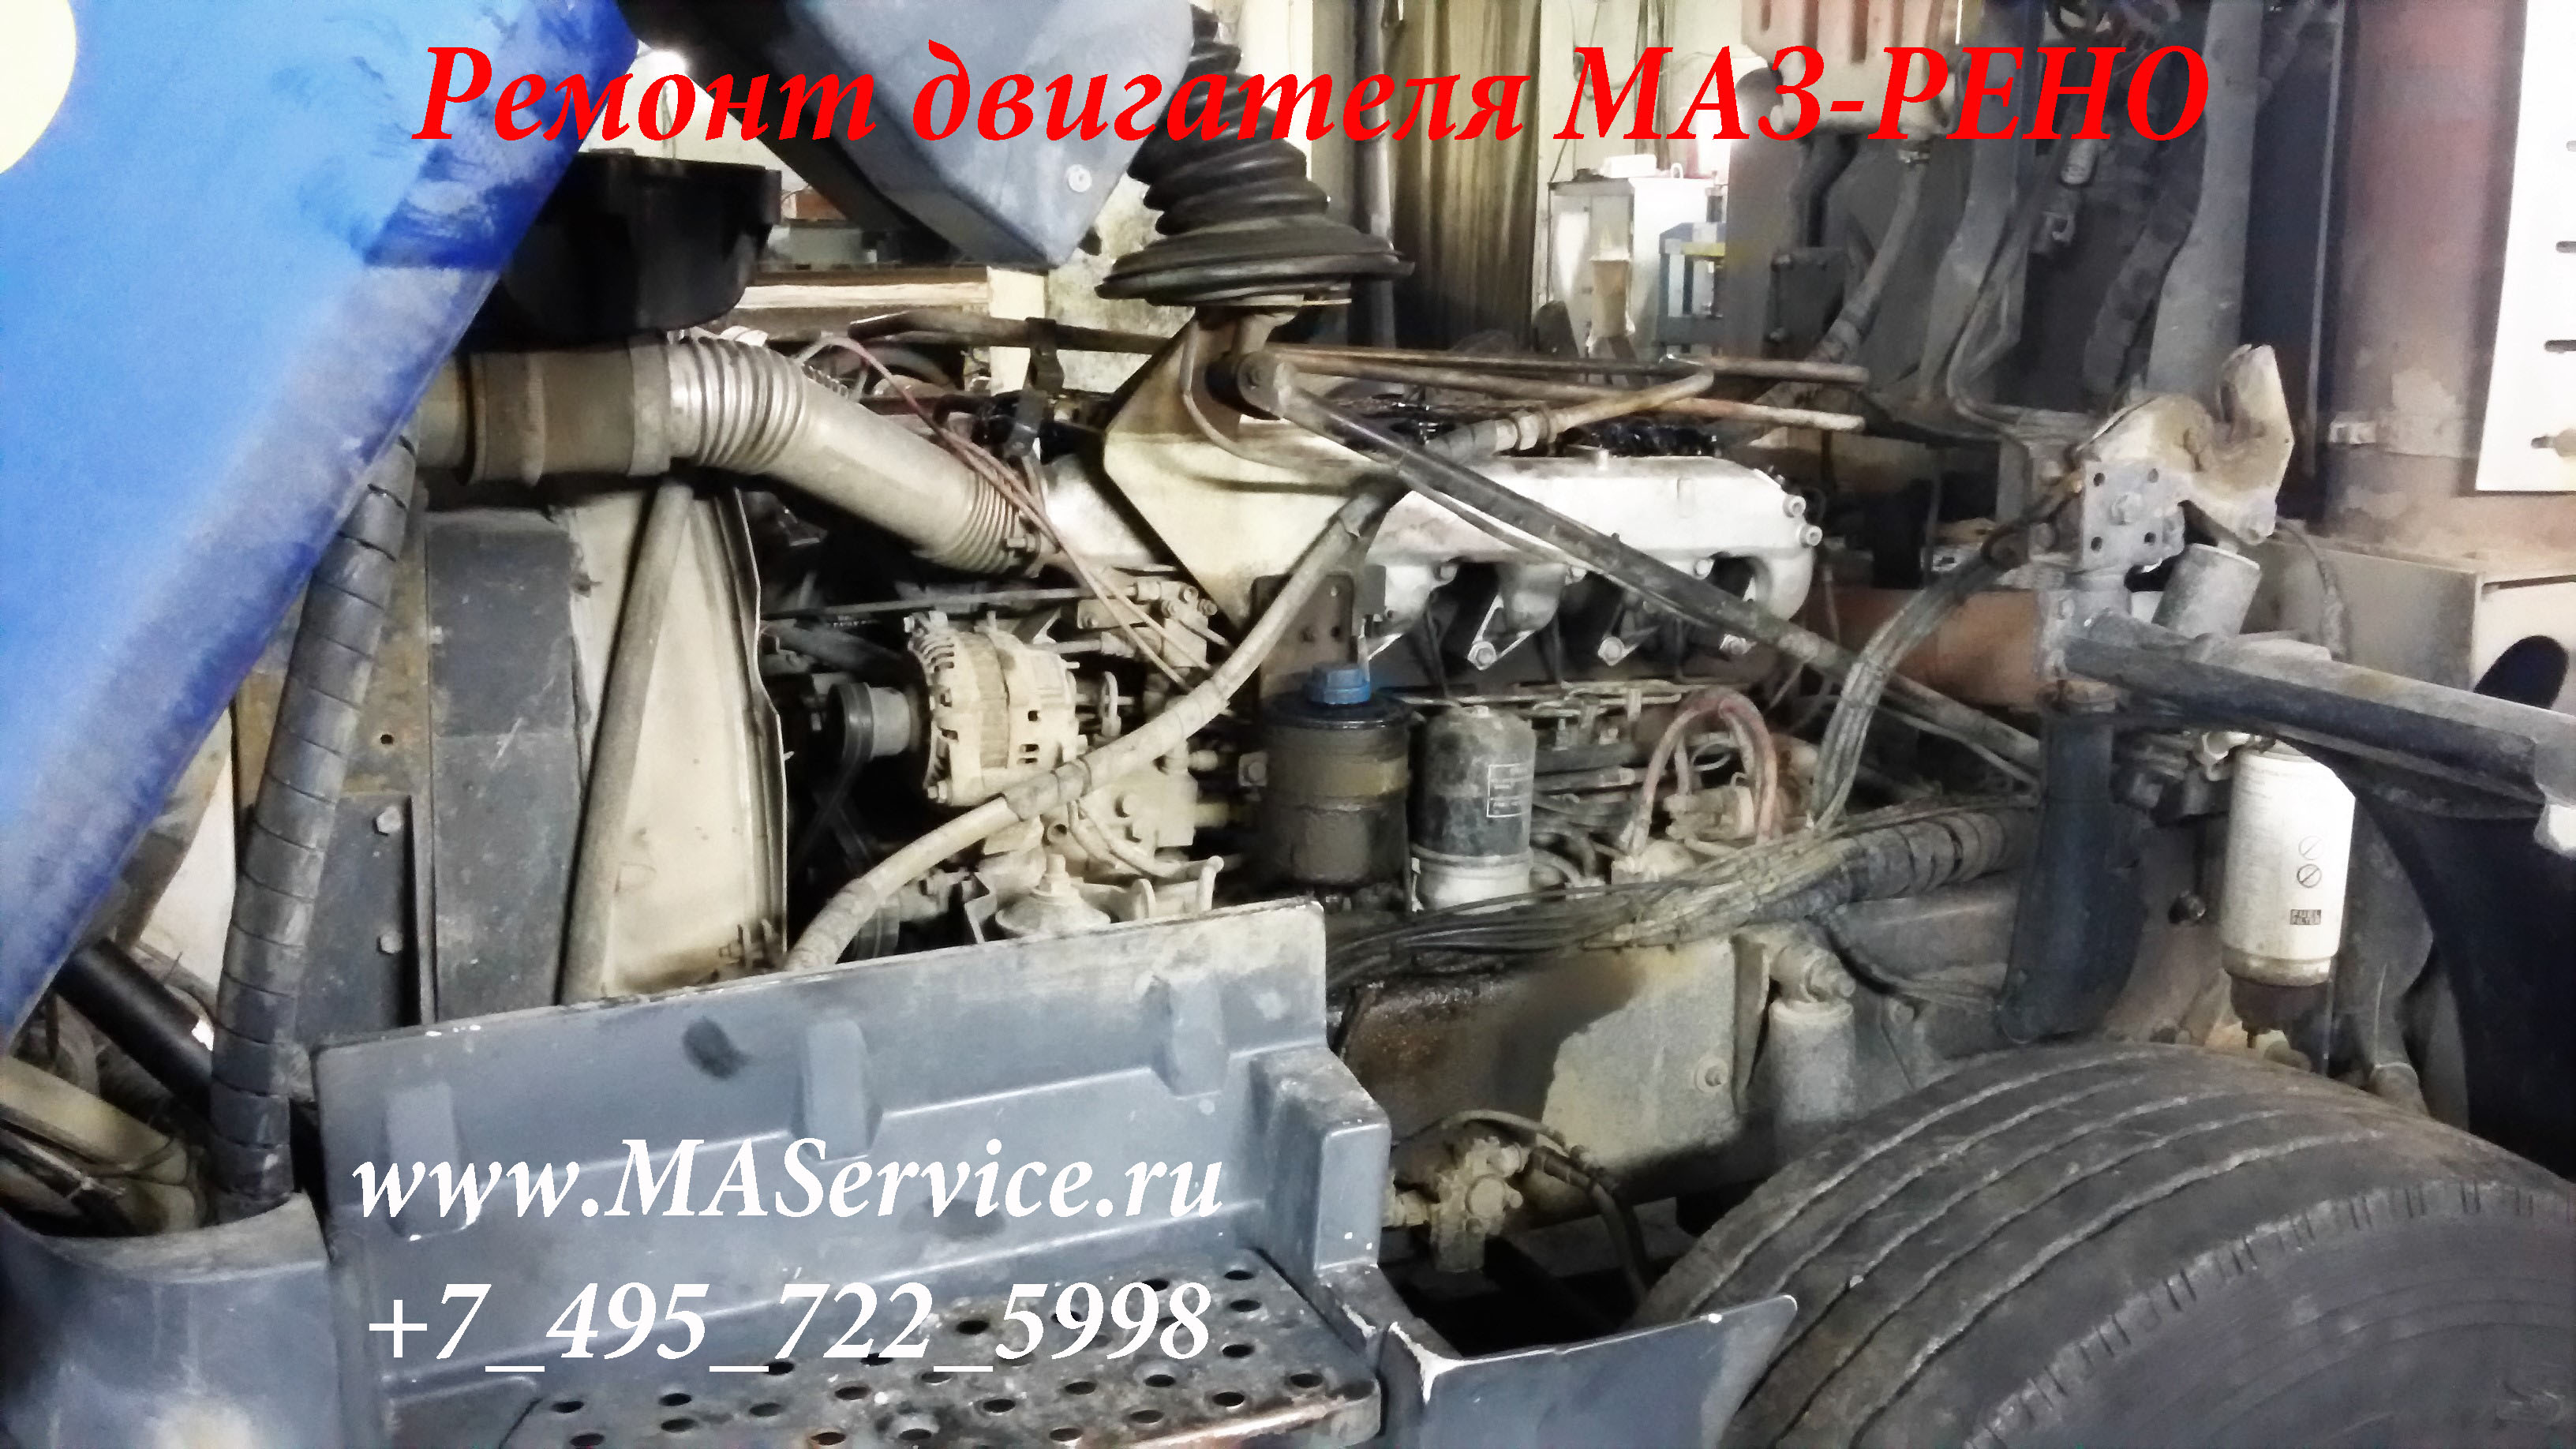 Маз-501: фото и технические характеристики - все про машиностроение и агрегаты на nadmash.ru